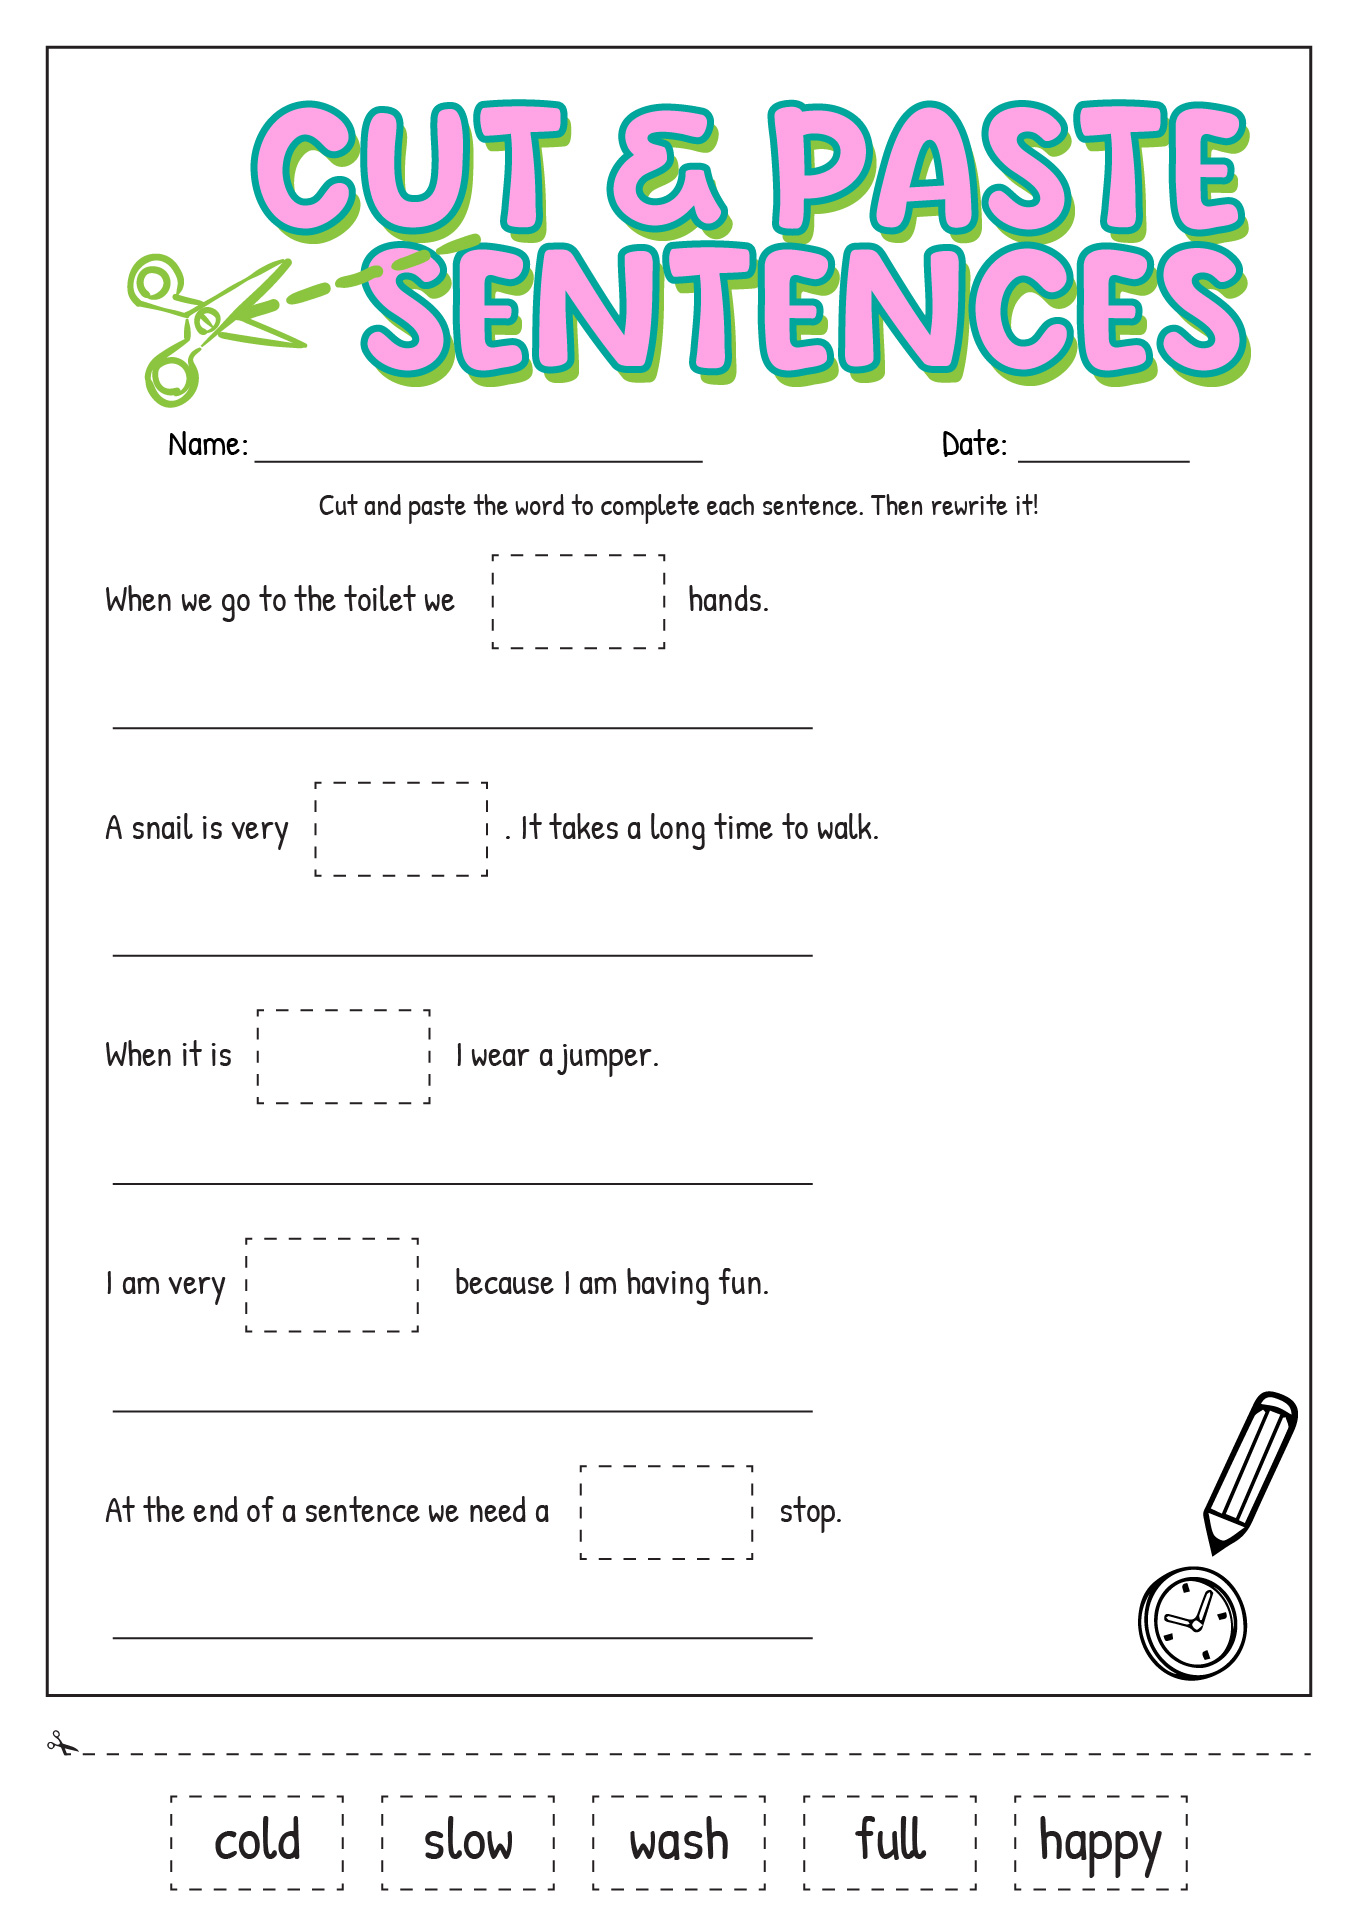 Cut and Paste Sentences